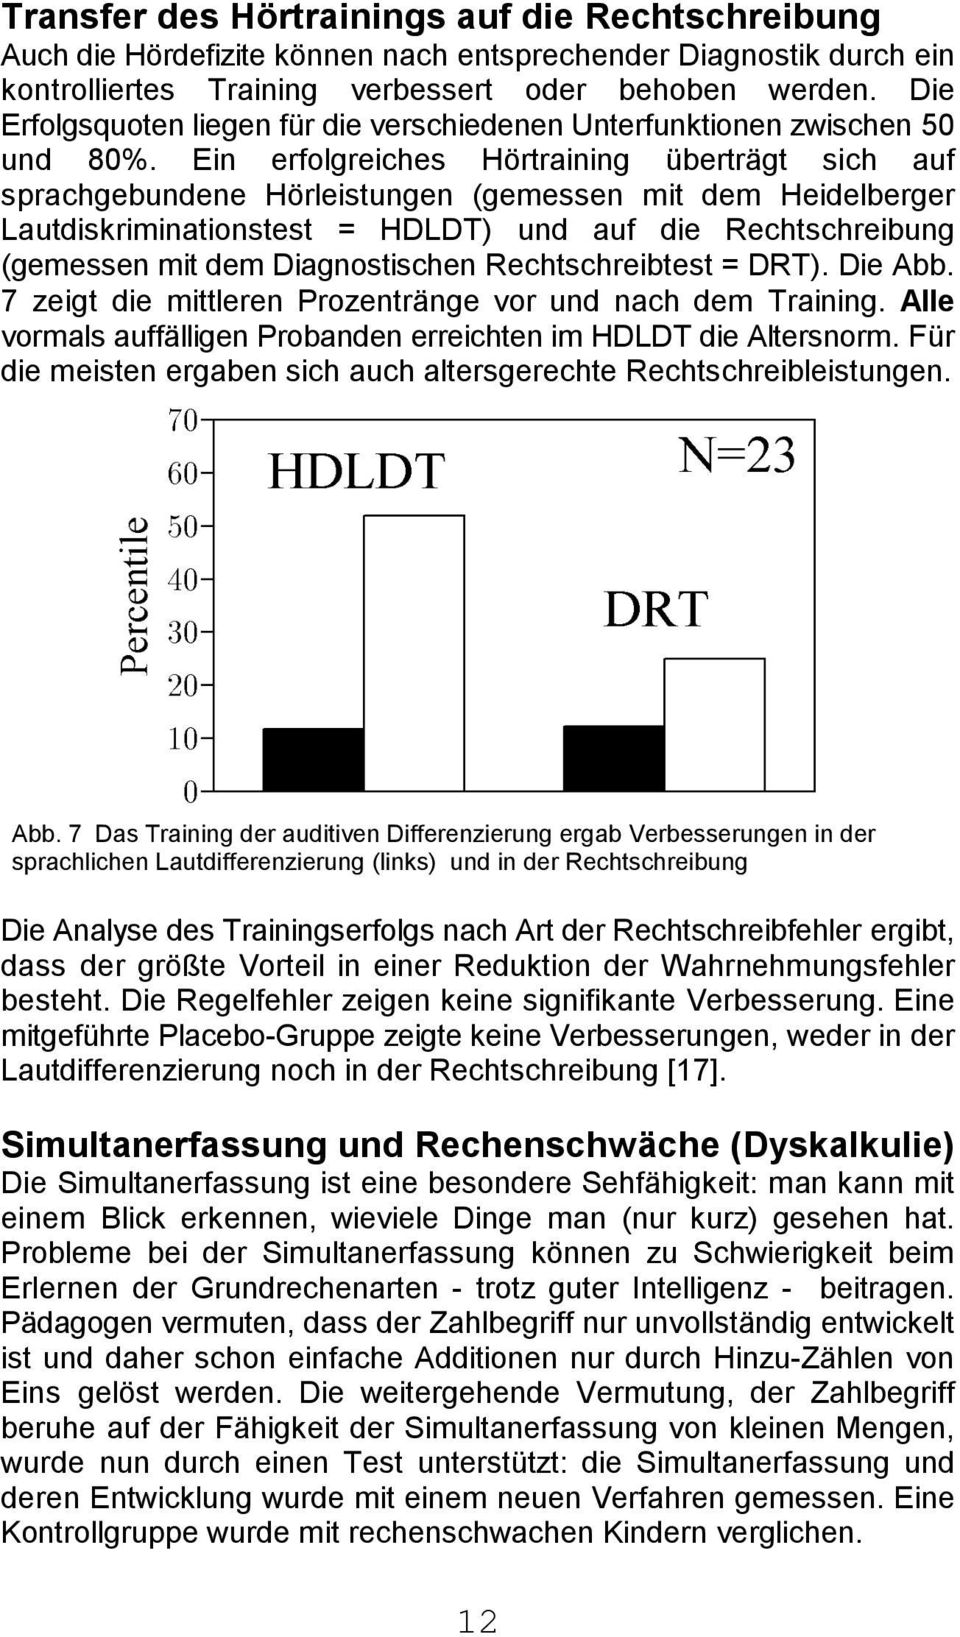 Ein erfolgreiches Hörtraining überträgt sich auf sprachgebundene Hörleistungen (gemessen mit dem Heidelberger Lautdiskriminationstest = HDLDT) und auf die Rechtschreibung (gemessen mit dem